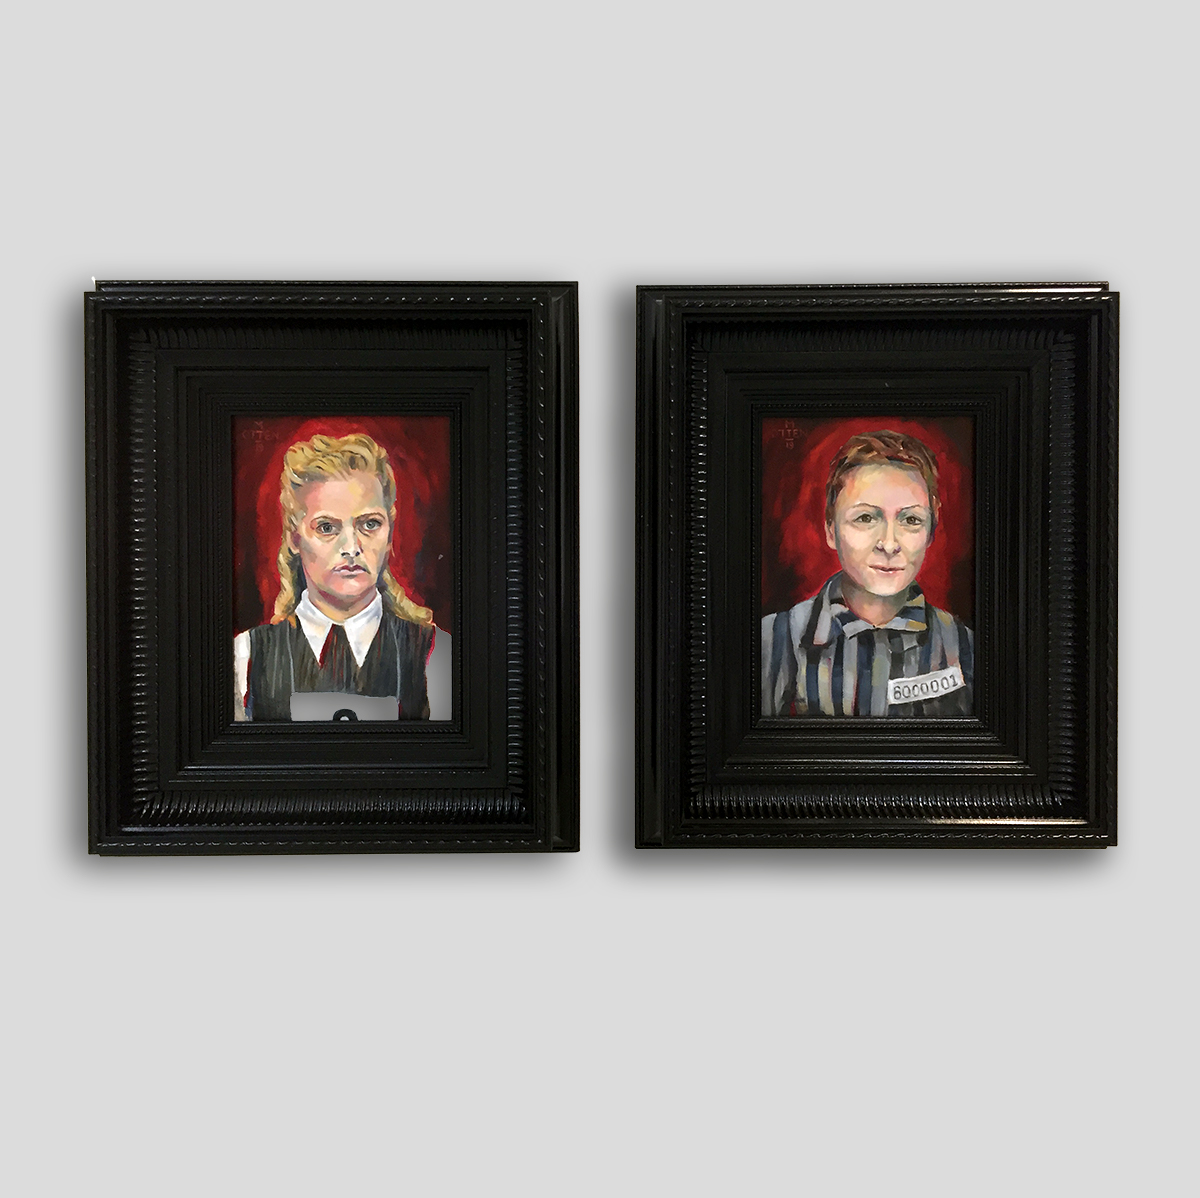 twee portretten van vrouwen tijdens de tweede wereldoorlog in olieverf tegen een zwart rode achtergrond.